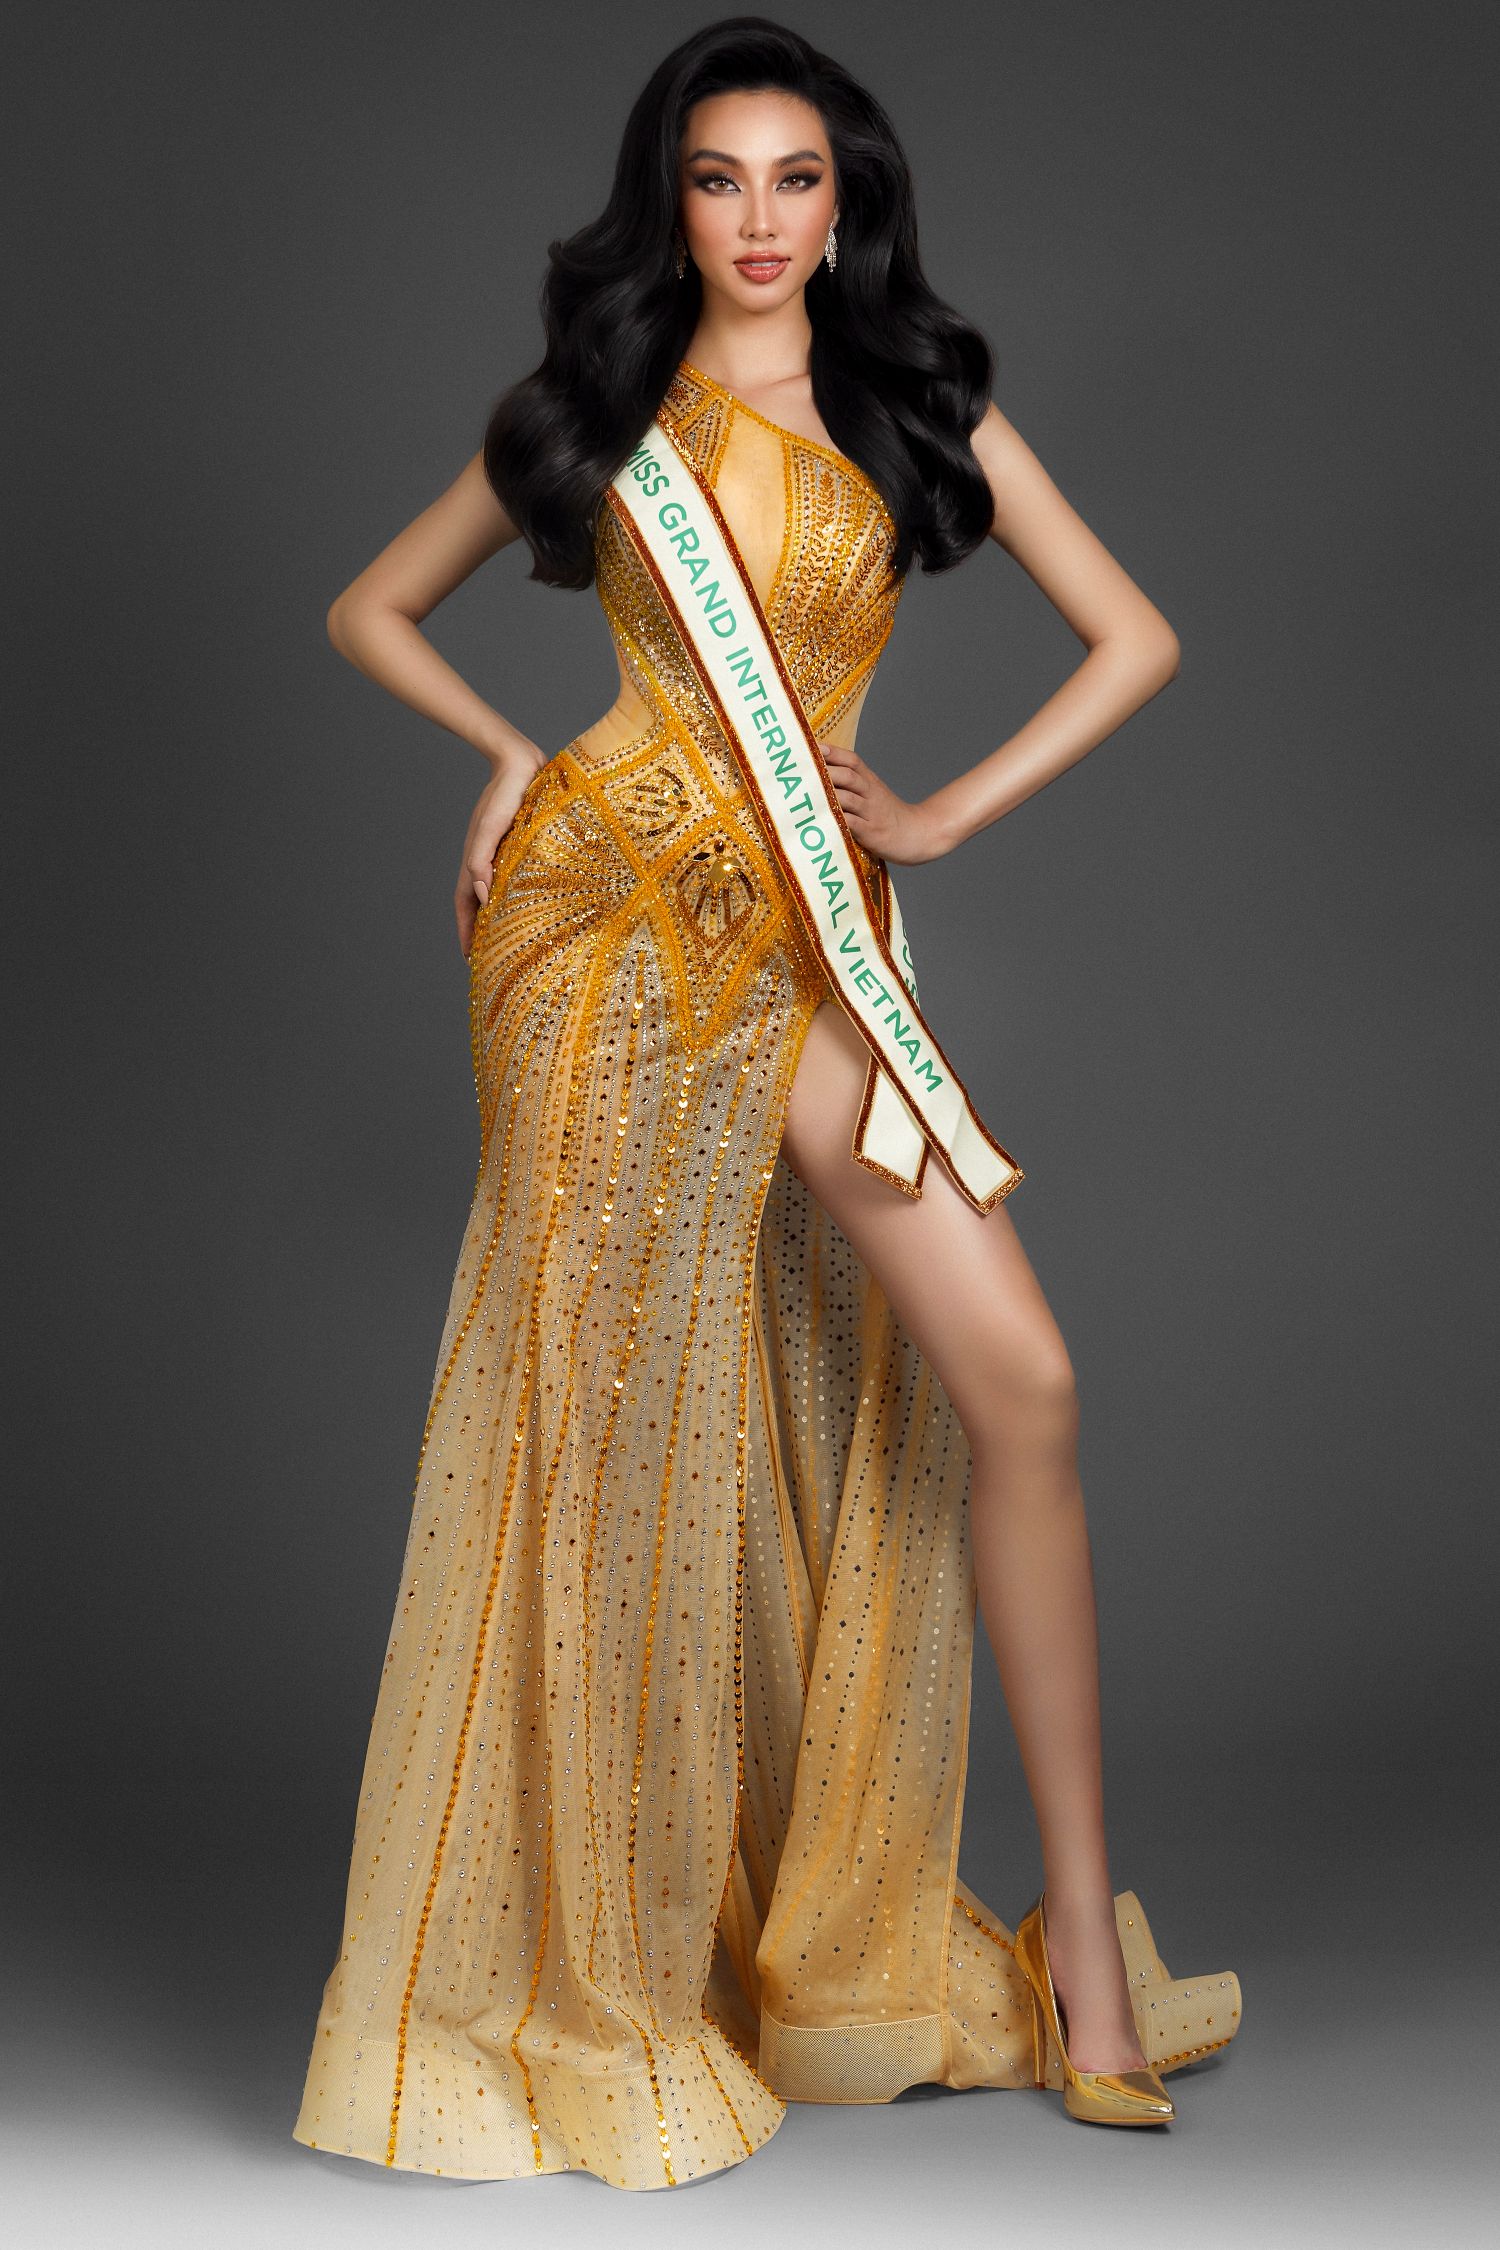 THUY TIEN 9 Nguyễn Thúc Thuỳ Tiên đại diện Việt Nam dự thi Miss Grand International 2021